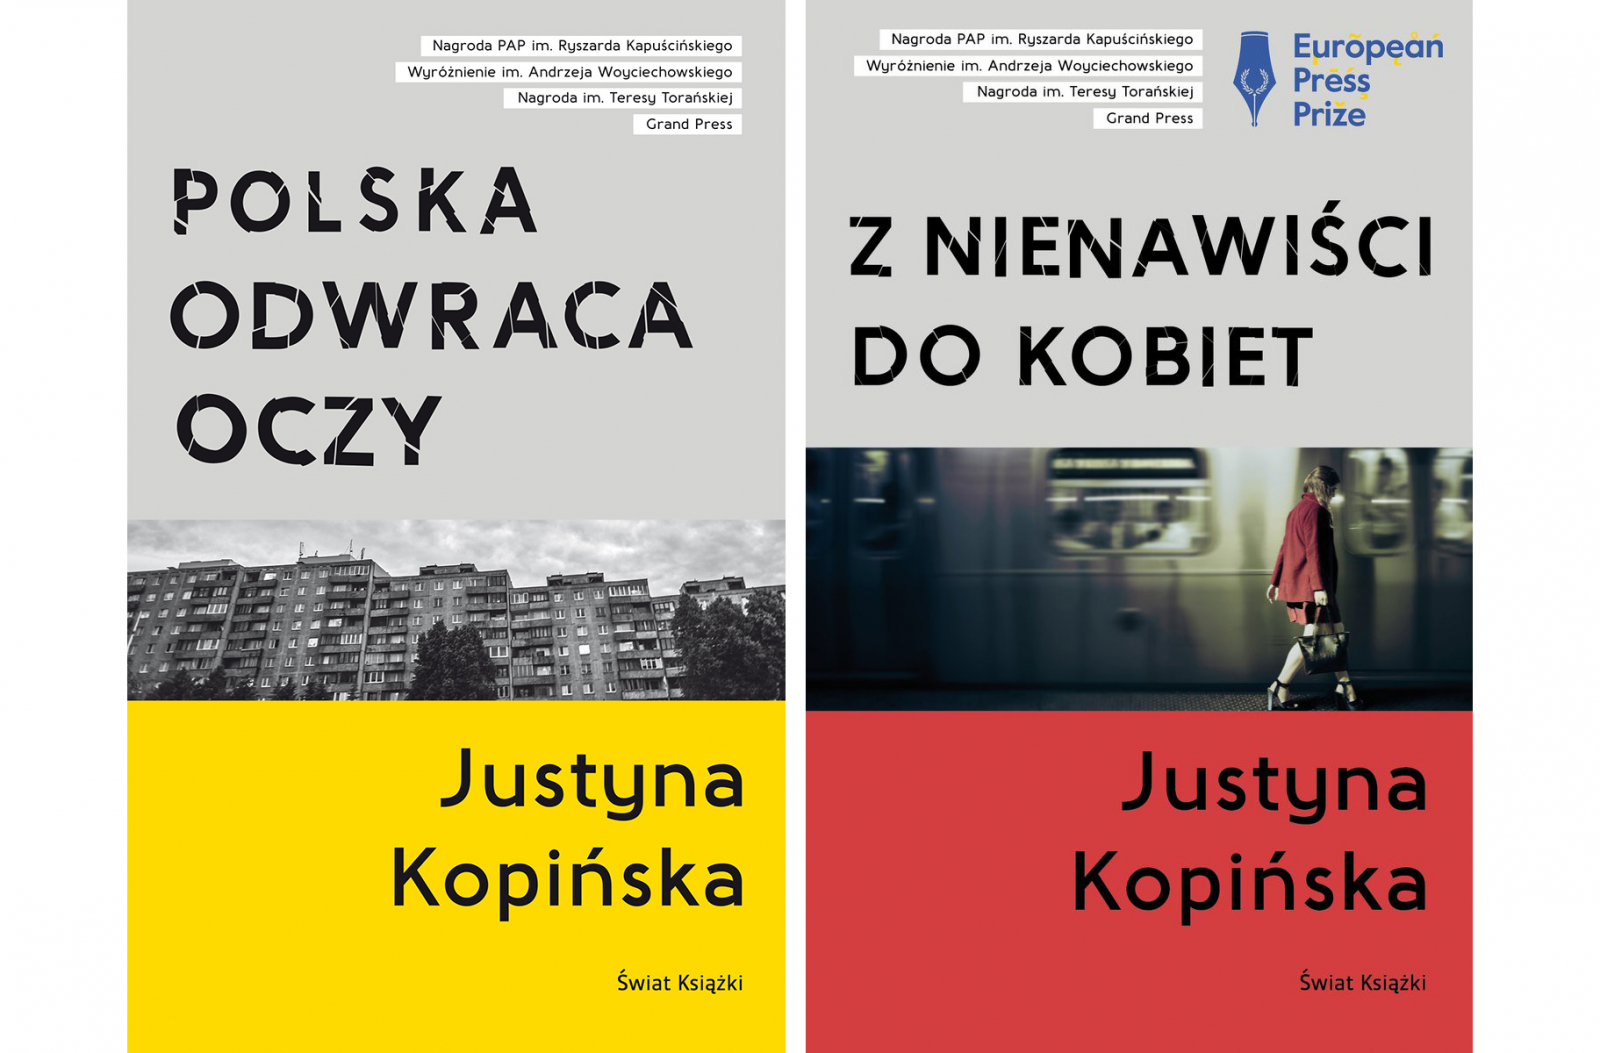 Justyna Kopińska Polska odwraca oczy i Z nienawiści do kobiet